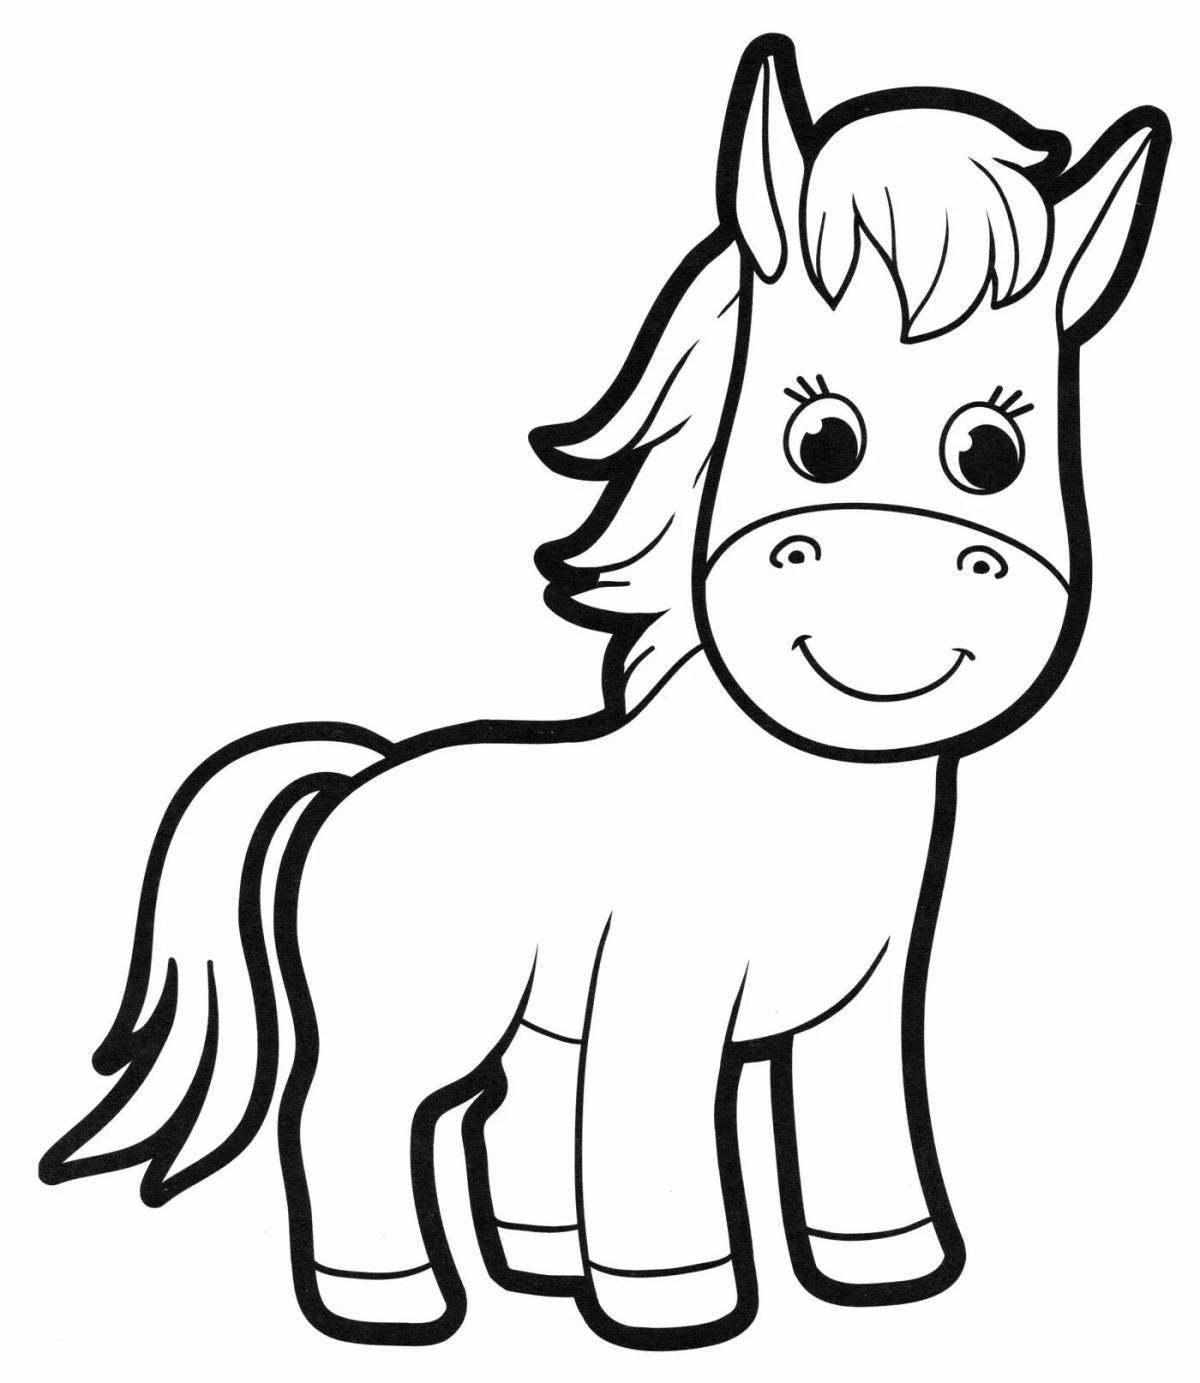 Сказочная раскраска лошадь для детей 4-5 лет